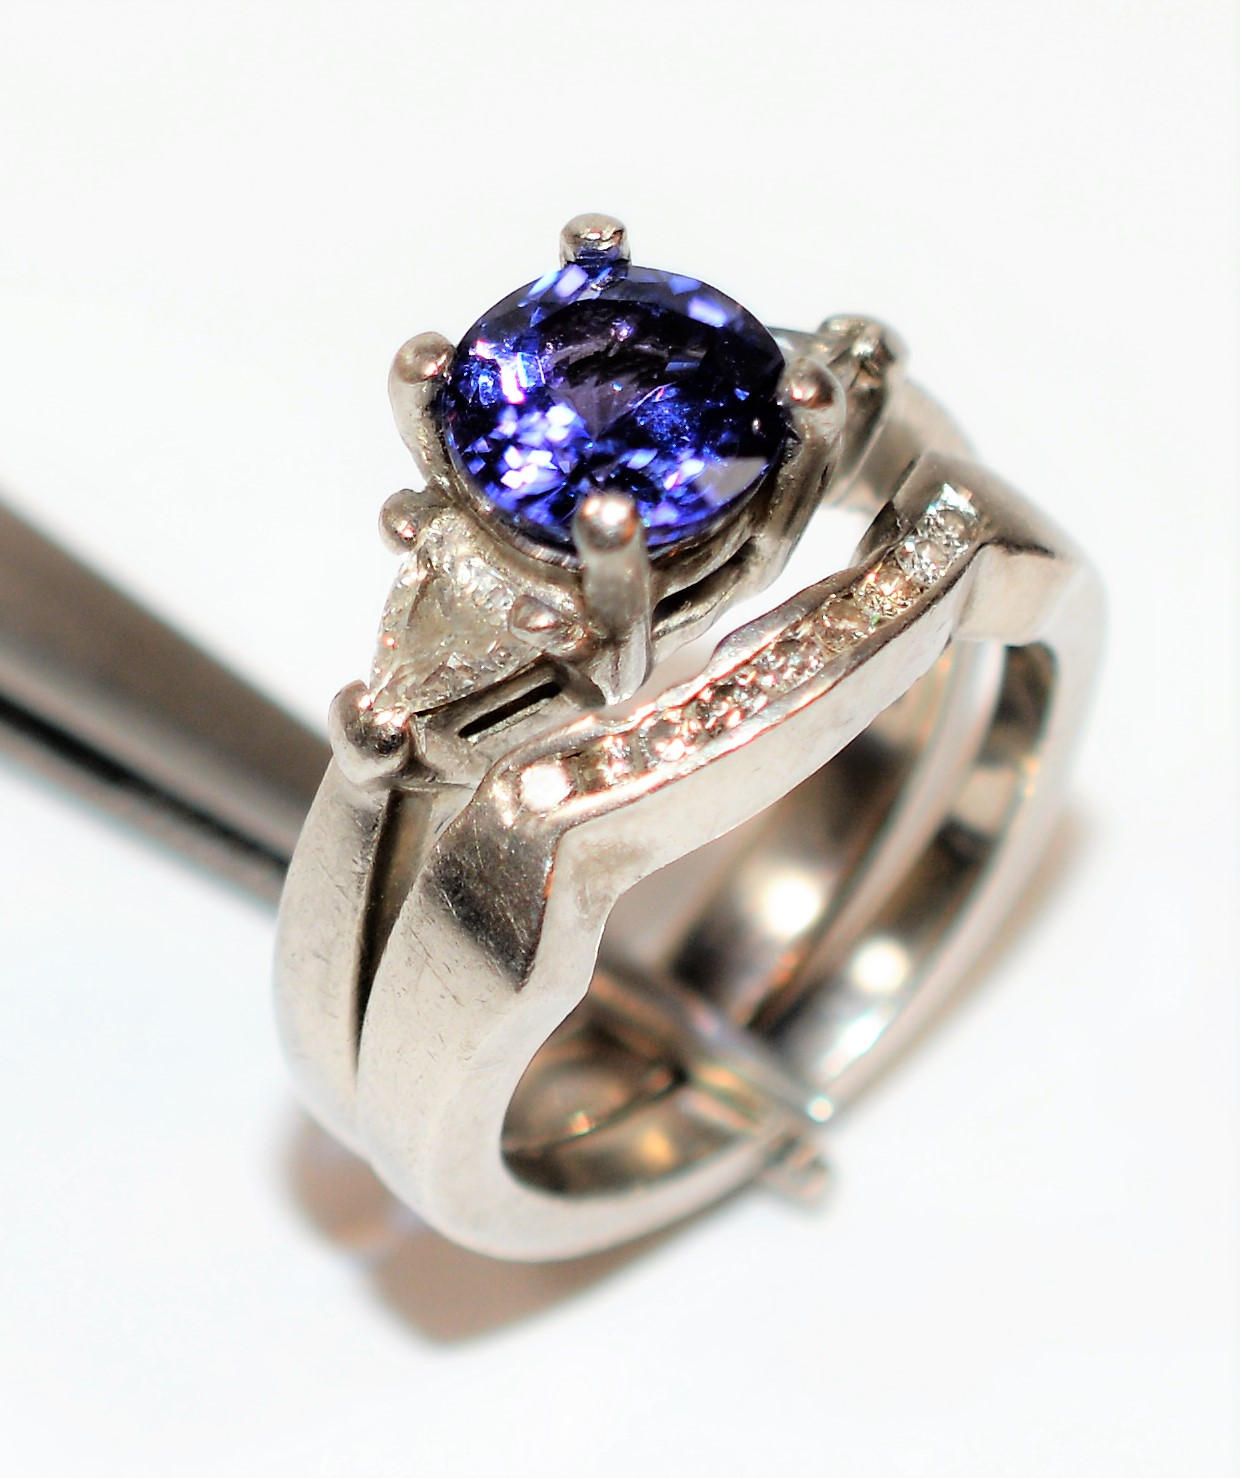 Natural D’Block Tanzanite & Diamond Ring Wedding Bridal Set Solid Platinum 2.34tcw Gemstone Ring Engagement Ring Wedding Band Tanzanite Ring